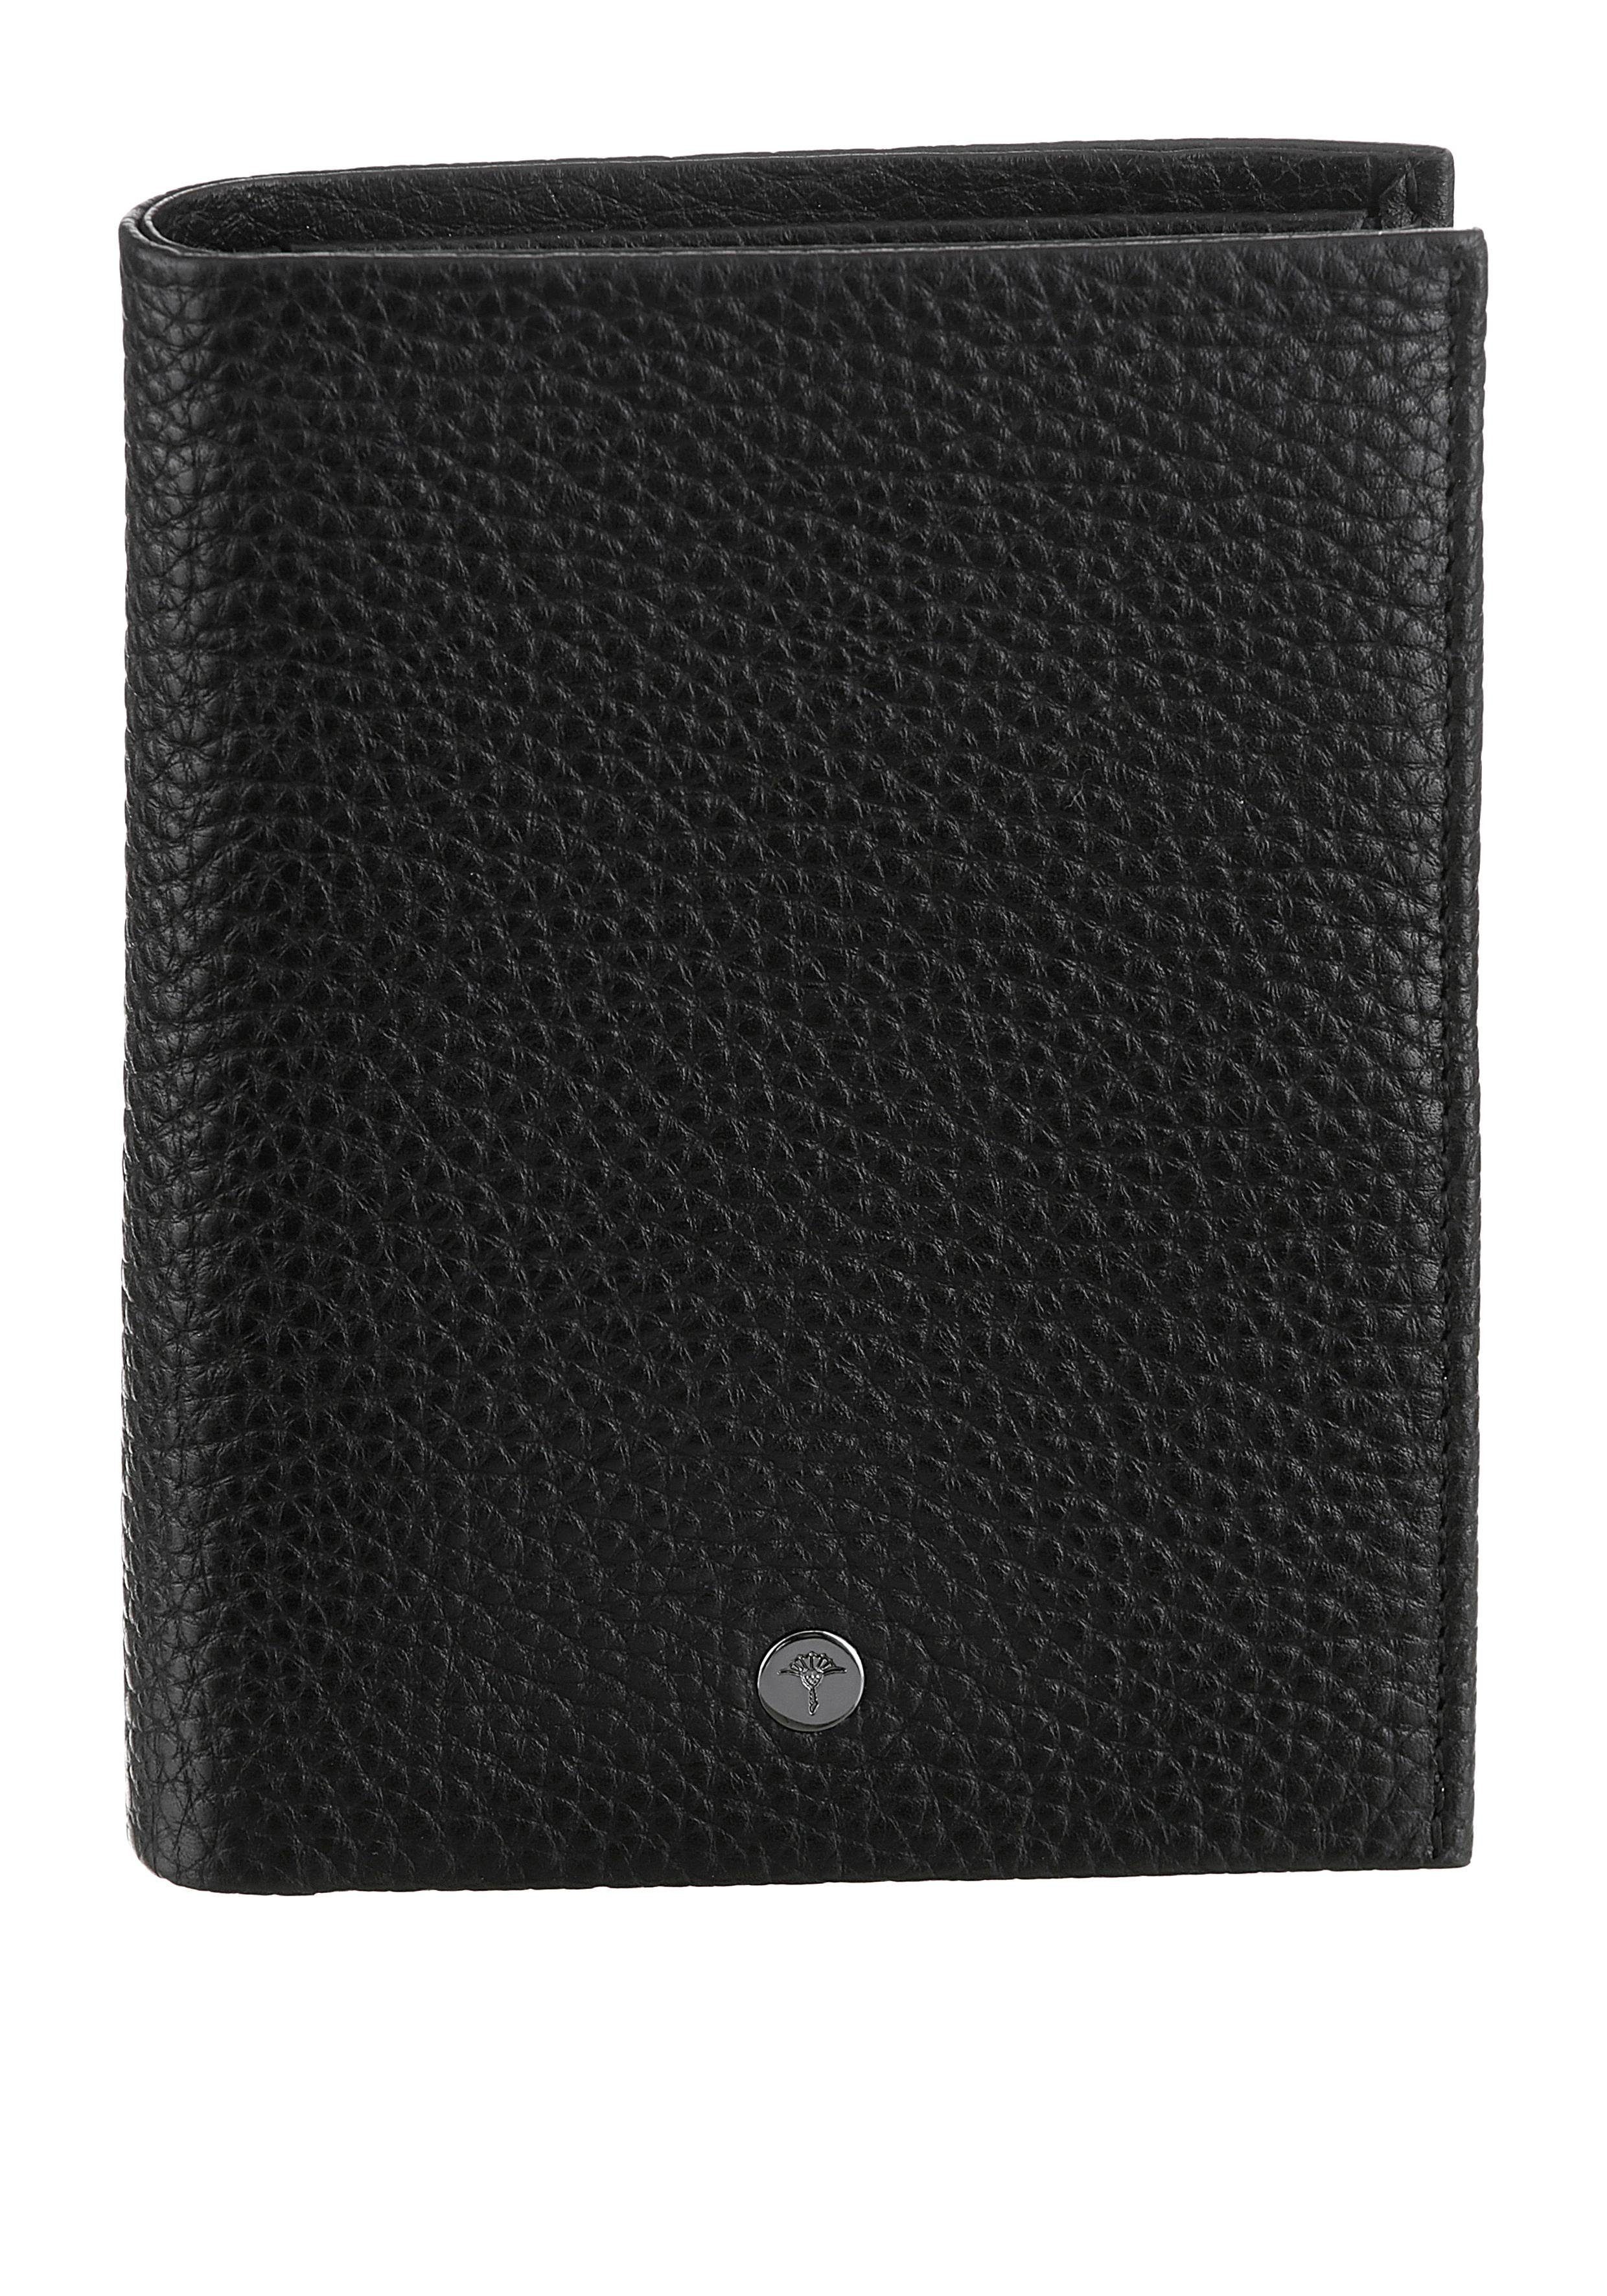 Joop! Geldbörse Cardona Ladon BillFold V8, im zeitlosen Design aus hochwertigem Leder schwarz